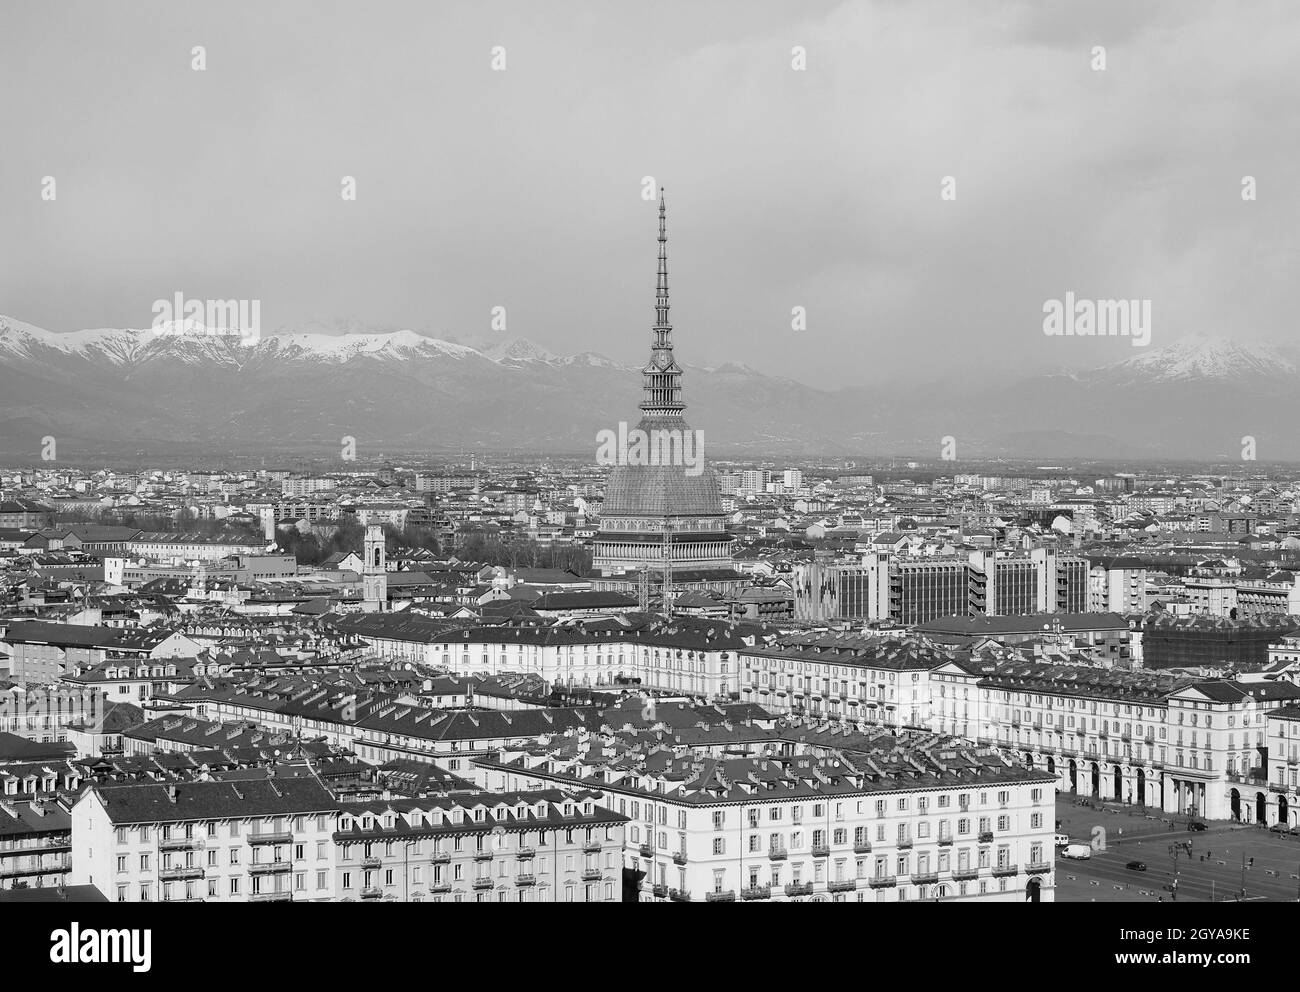 Vista aérea de la ciudad de Turín, Italia en blanco y negro Foto de stock